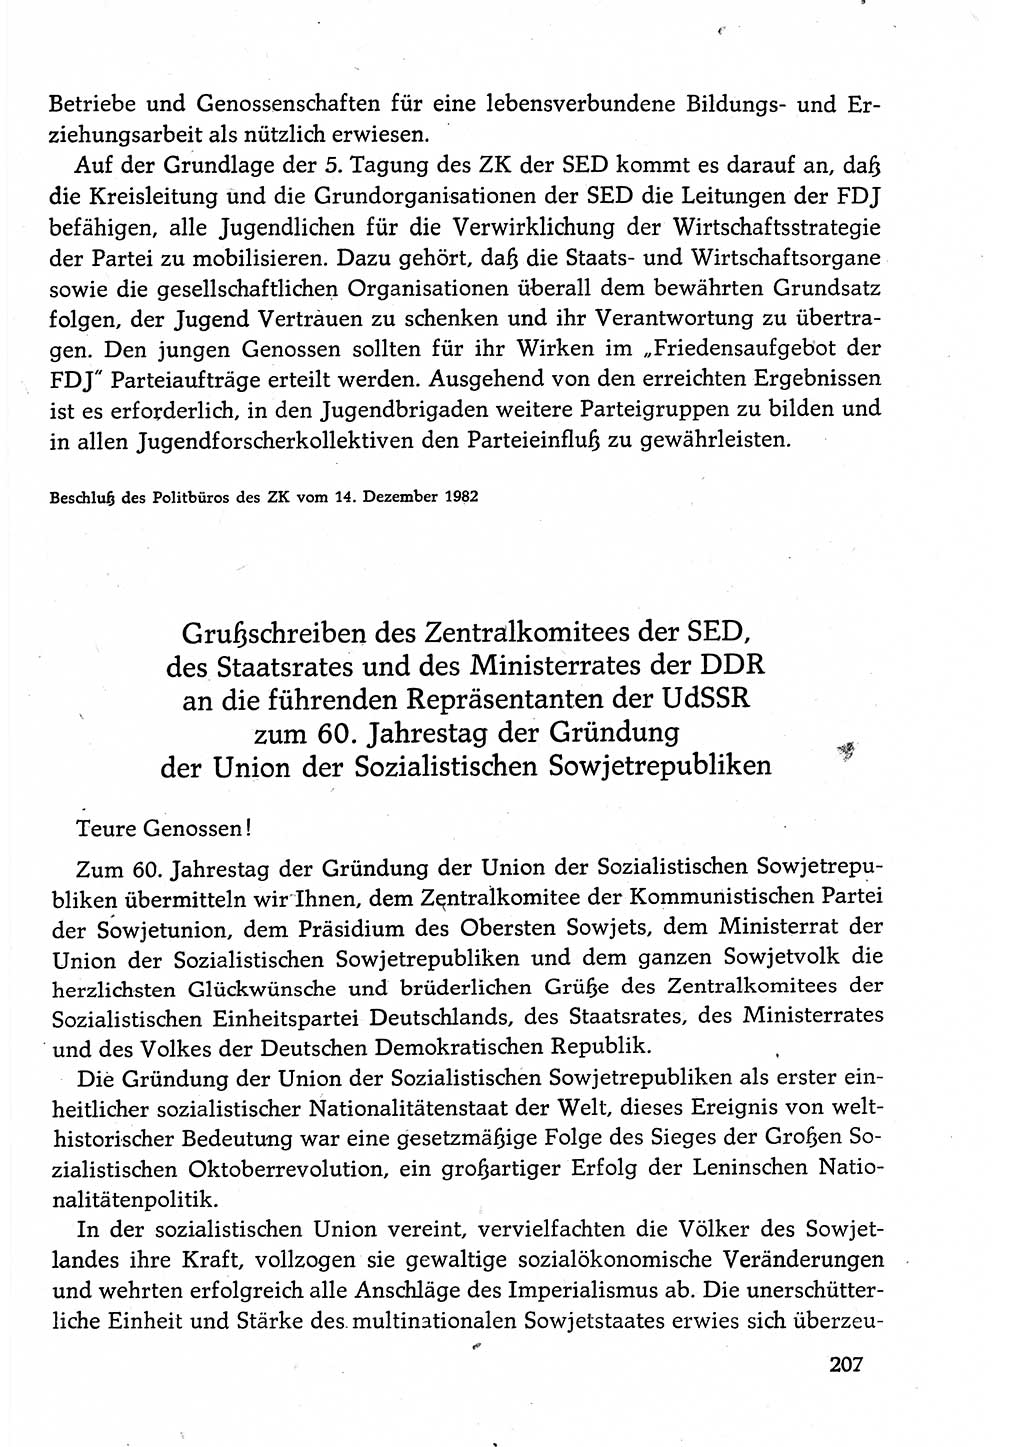 Dokumente der Sozialistischen Einheitspartei Deutschlands (SED) [Deutsche Demokratische Republik (DDR)] 1982-1983, Seite 207 (Dok. SED DDR 1982-1983, S. 207)